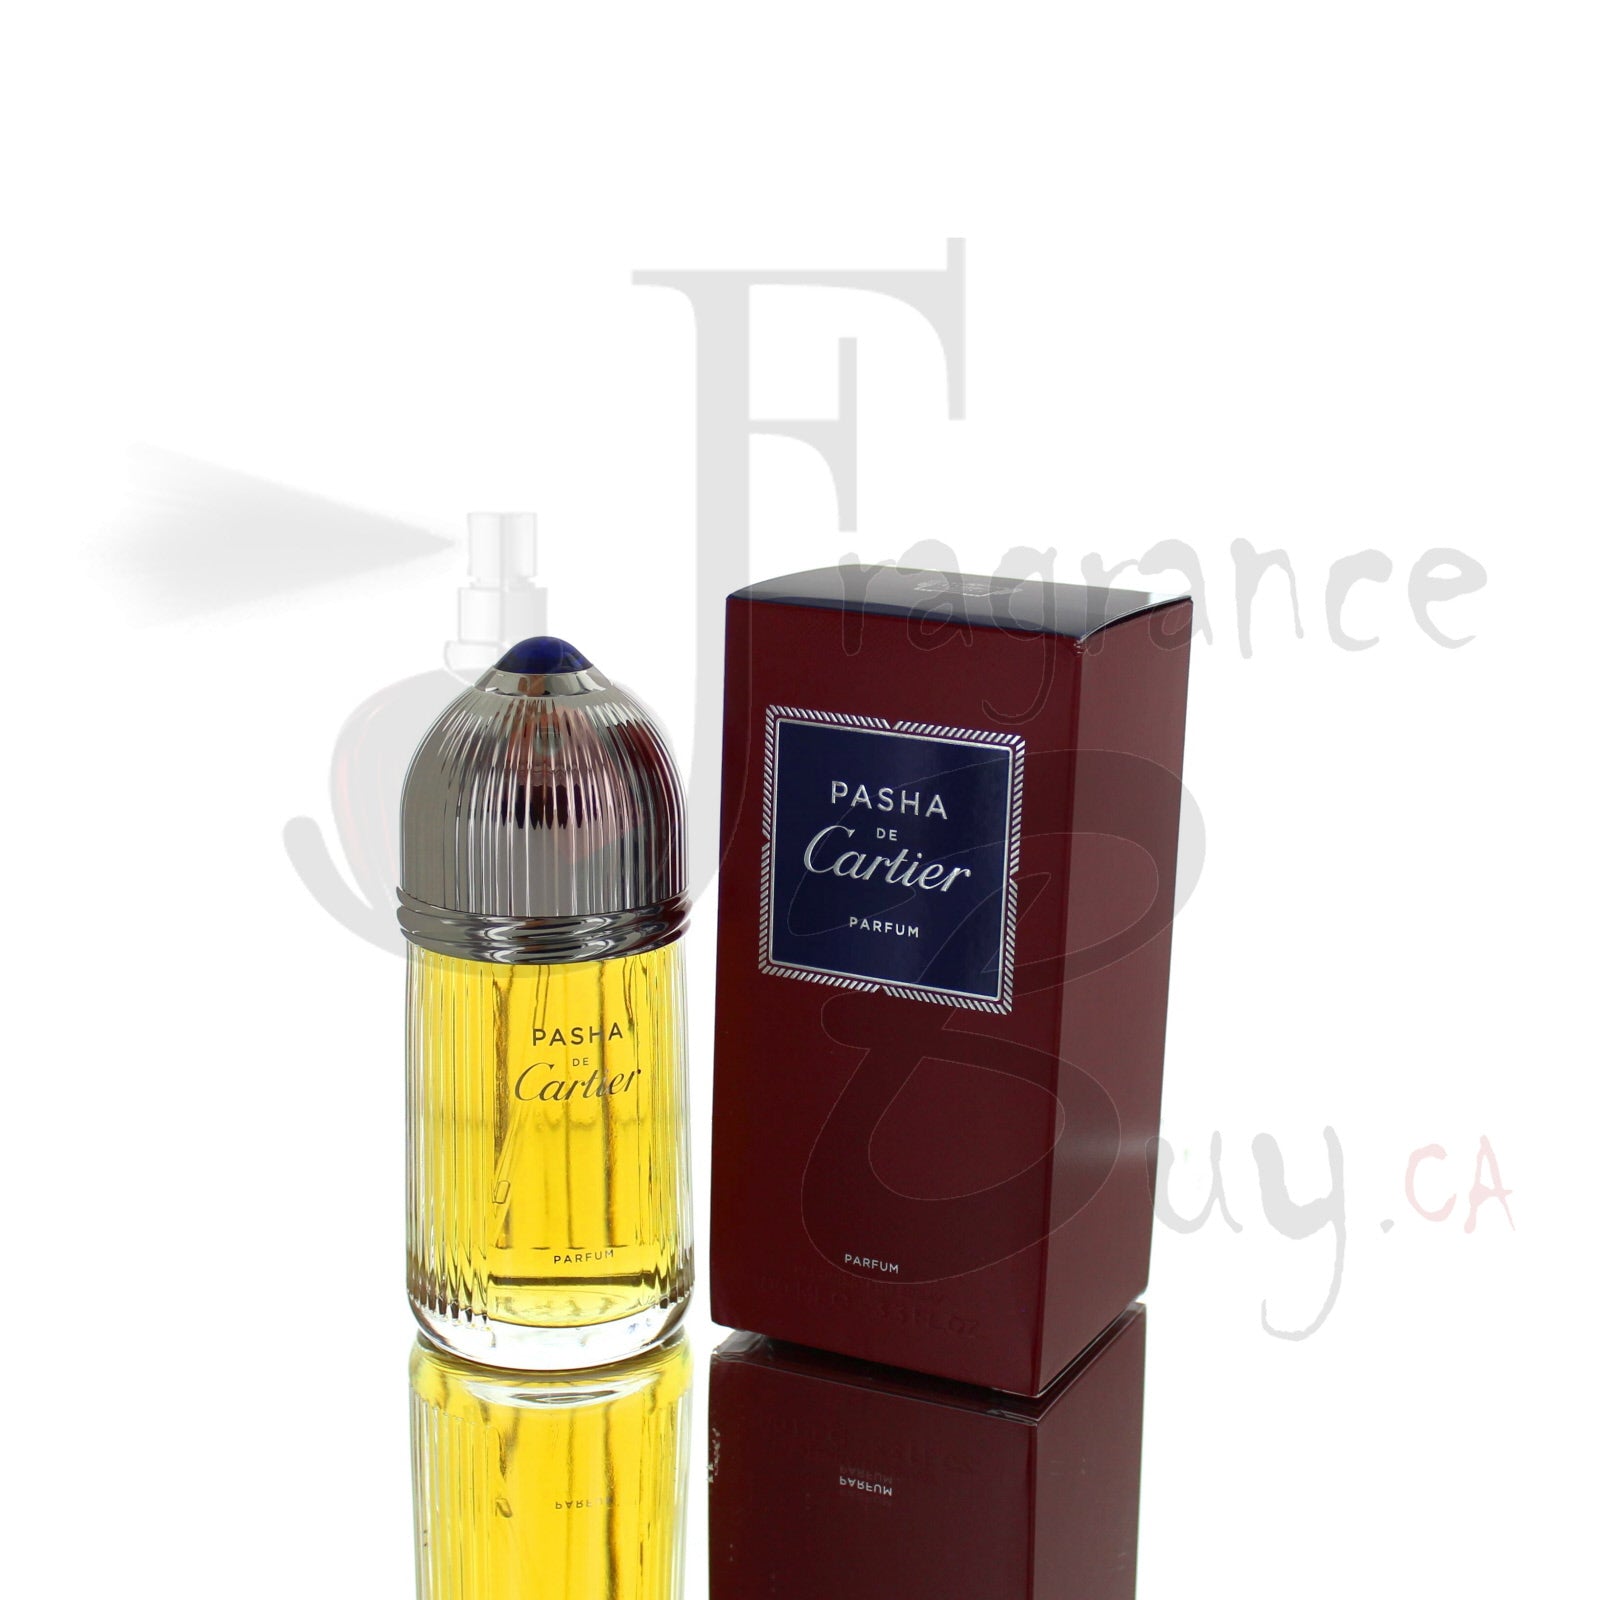 cartier parfum